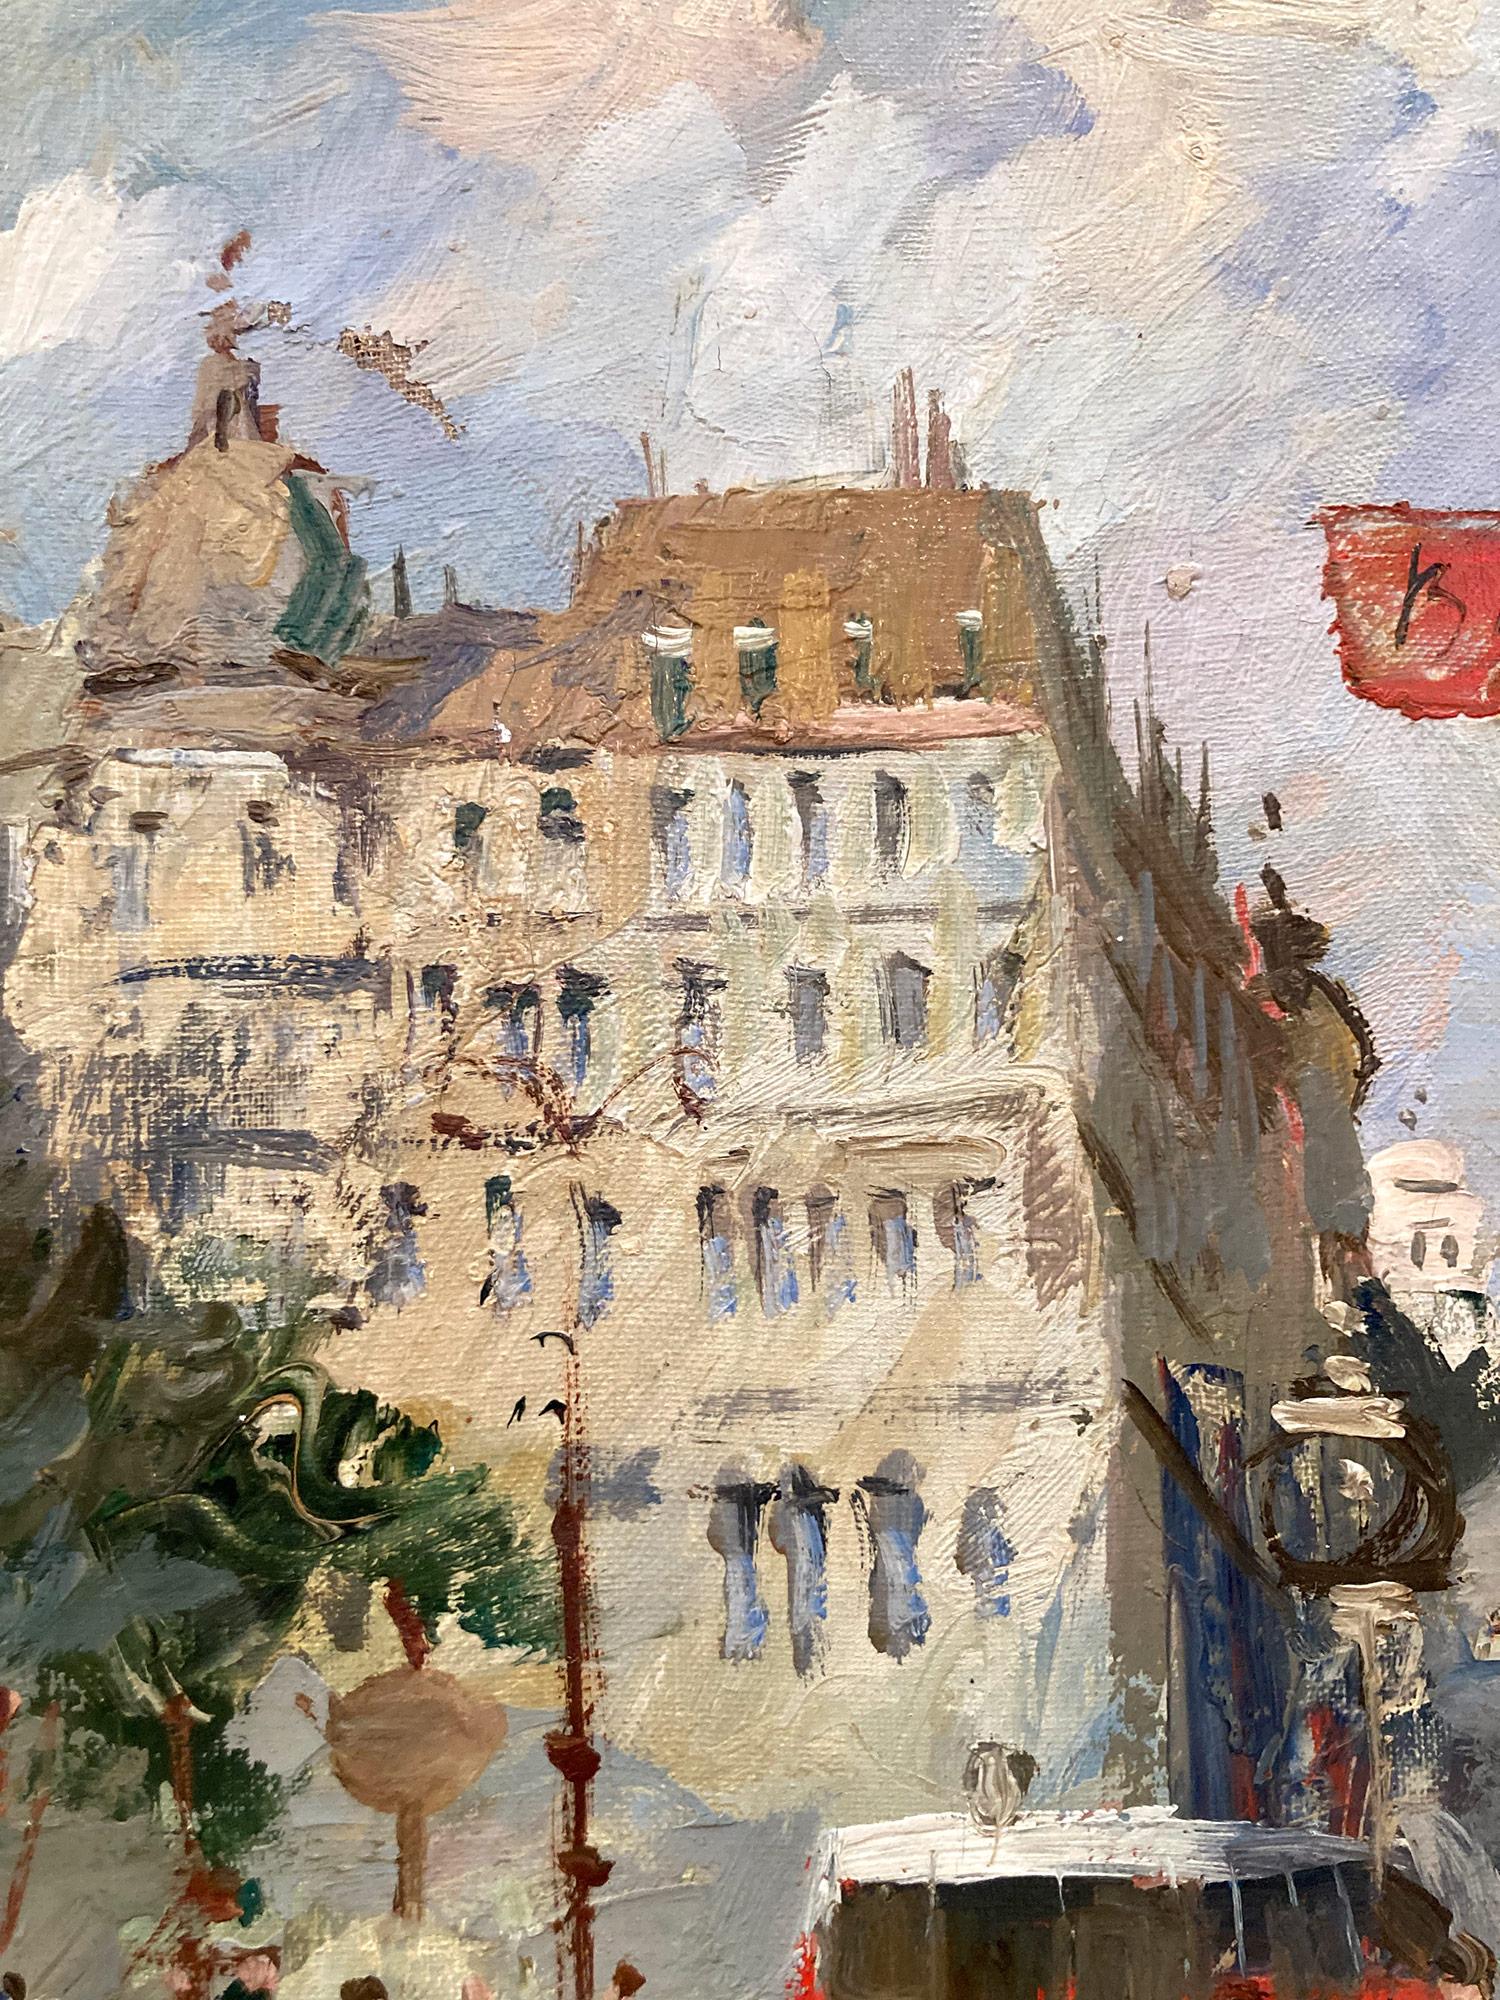 Une belle huile sur toile de l'artiste français Anatol Bouchet. Bouchet était un peintre français connu pour ses paysages urbains colorés décrivant l'époque de sa génération. Ce tableau est un merveilleux exemple de son travail au sommet de sa